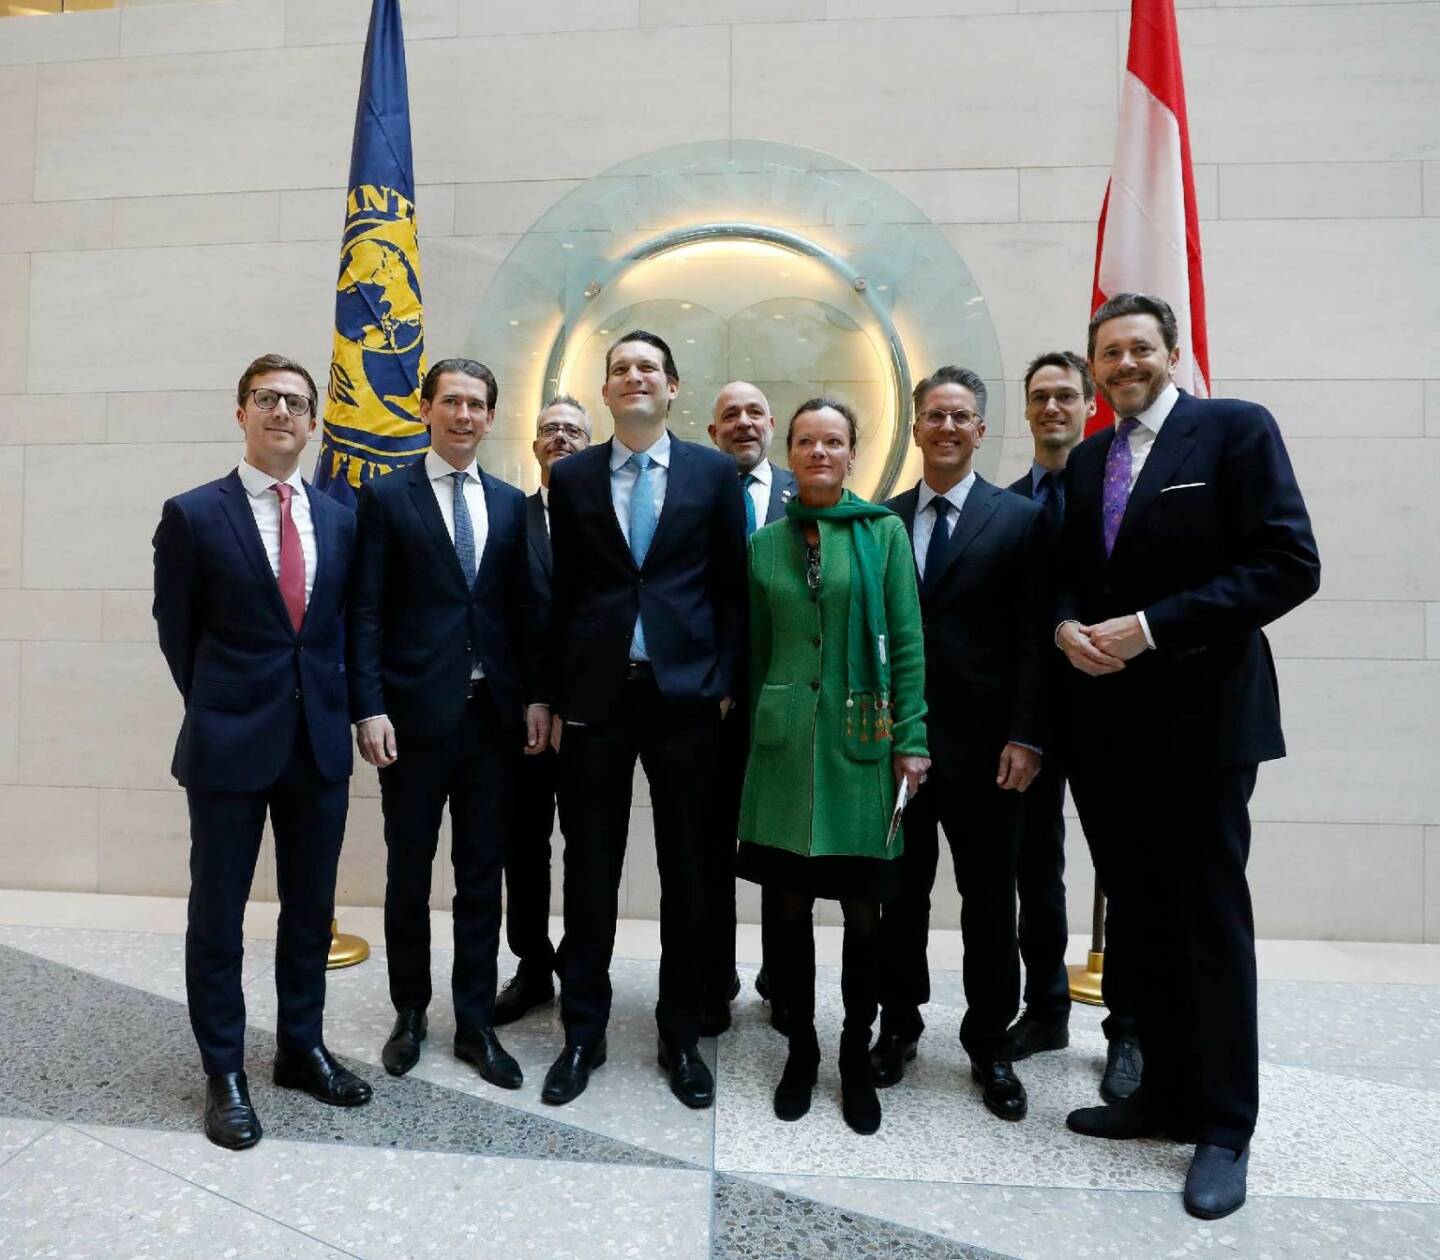 Am 21. Februar 2019 traf Bundeskanzler Sebastian Kurz im Rahmen seiner Washington Reise Österreicher bei Internationaler Währungsfonds. FotografIn: Dragan Tatic Quelle: BKA